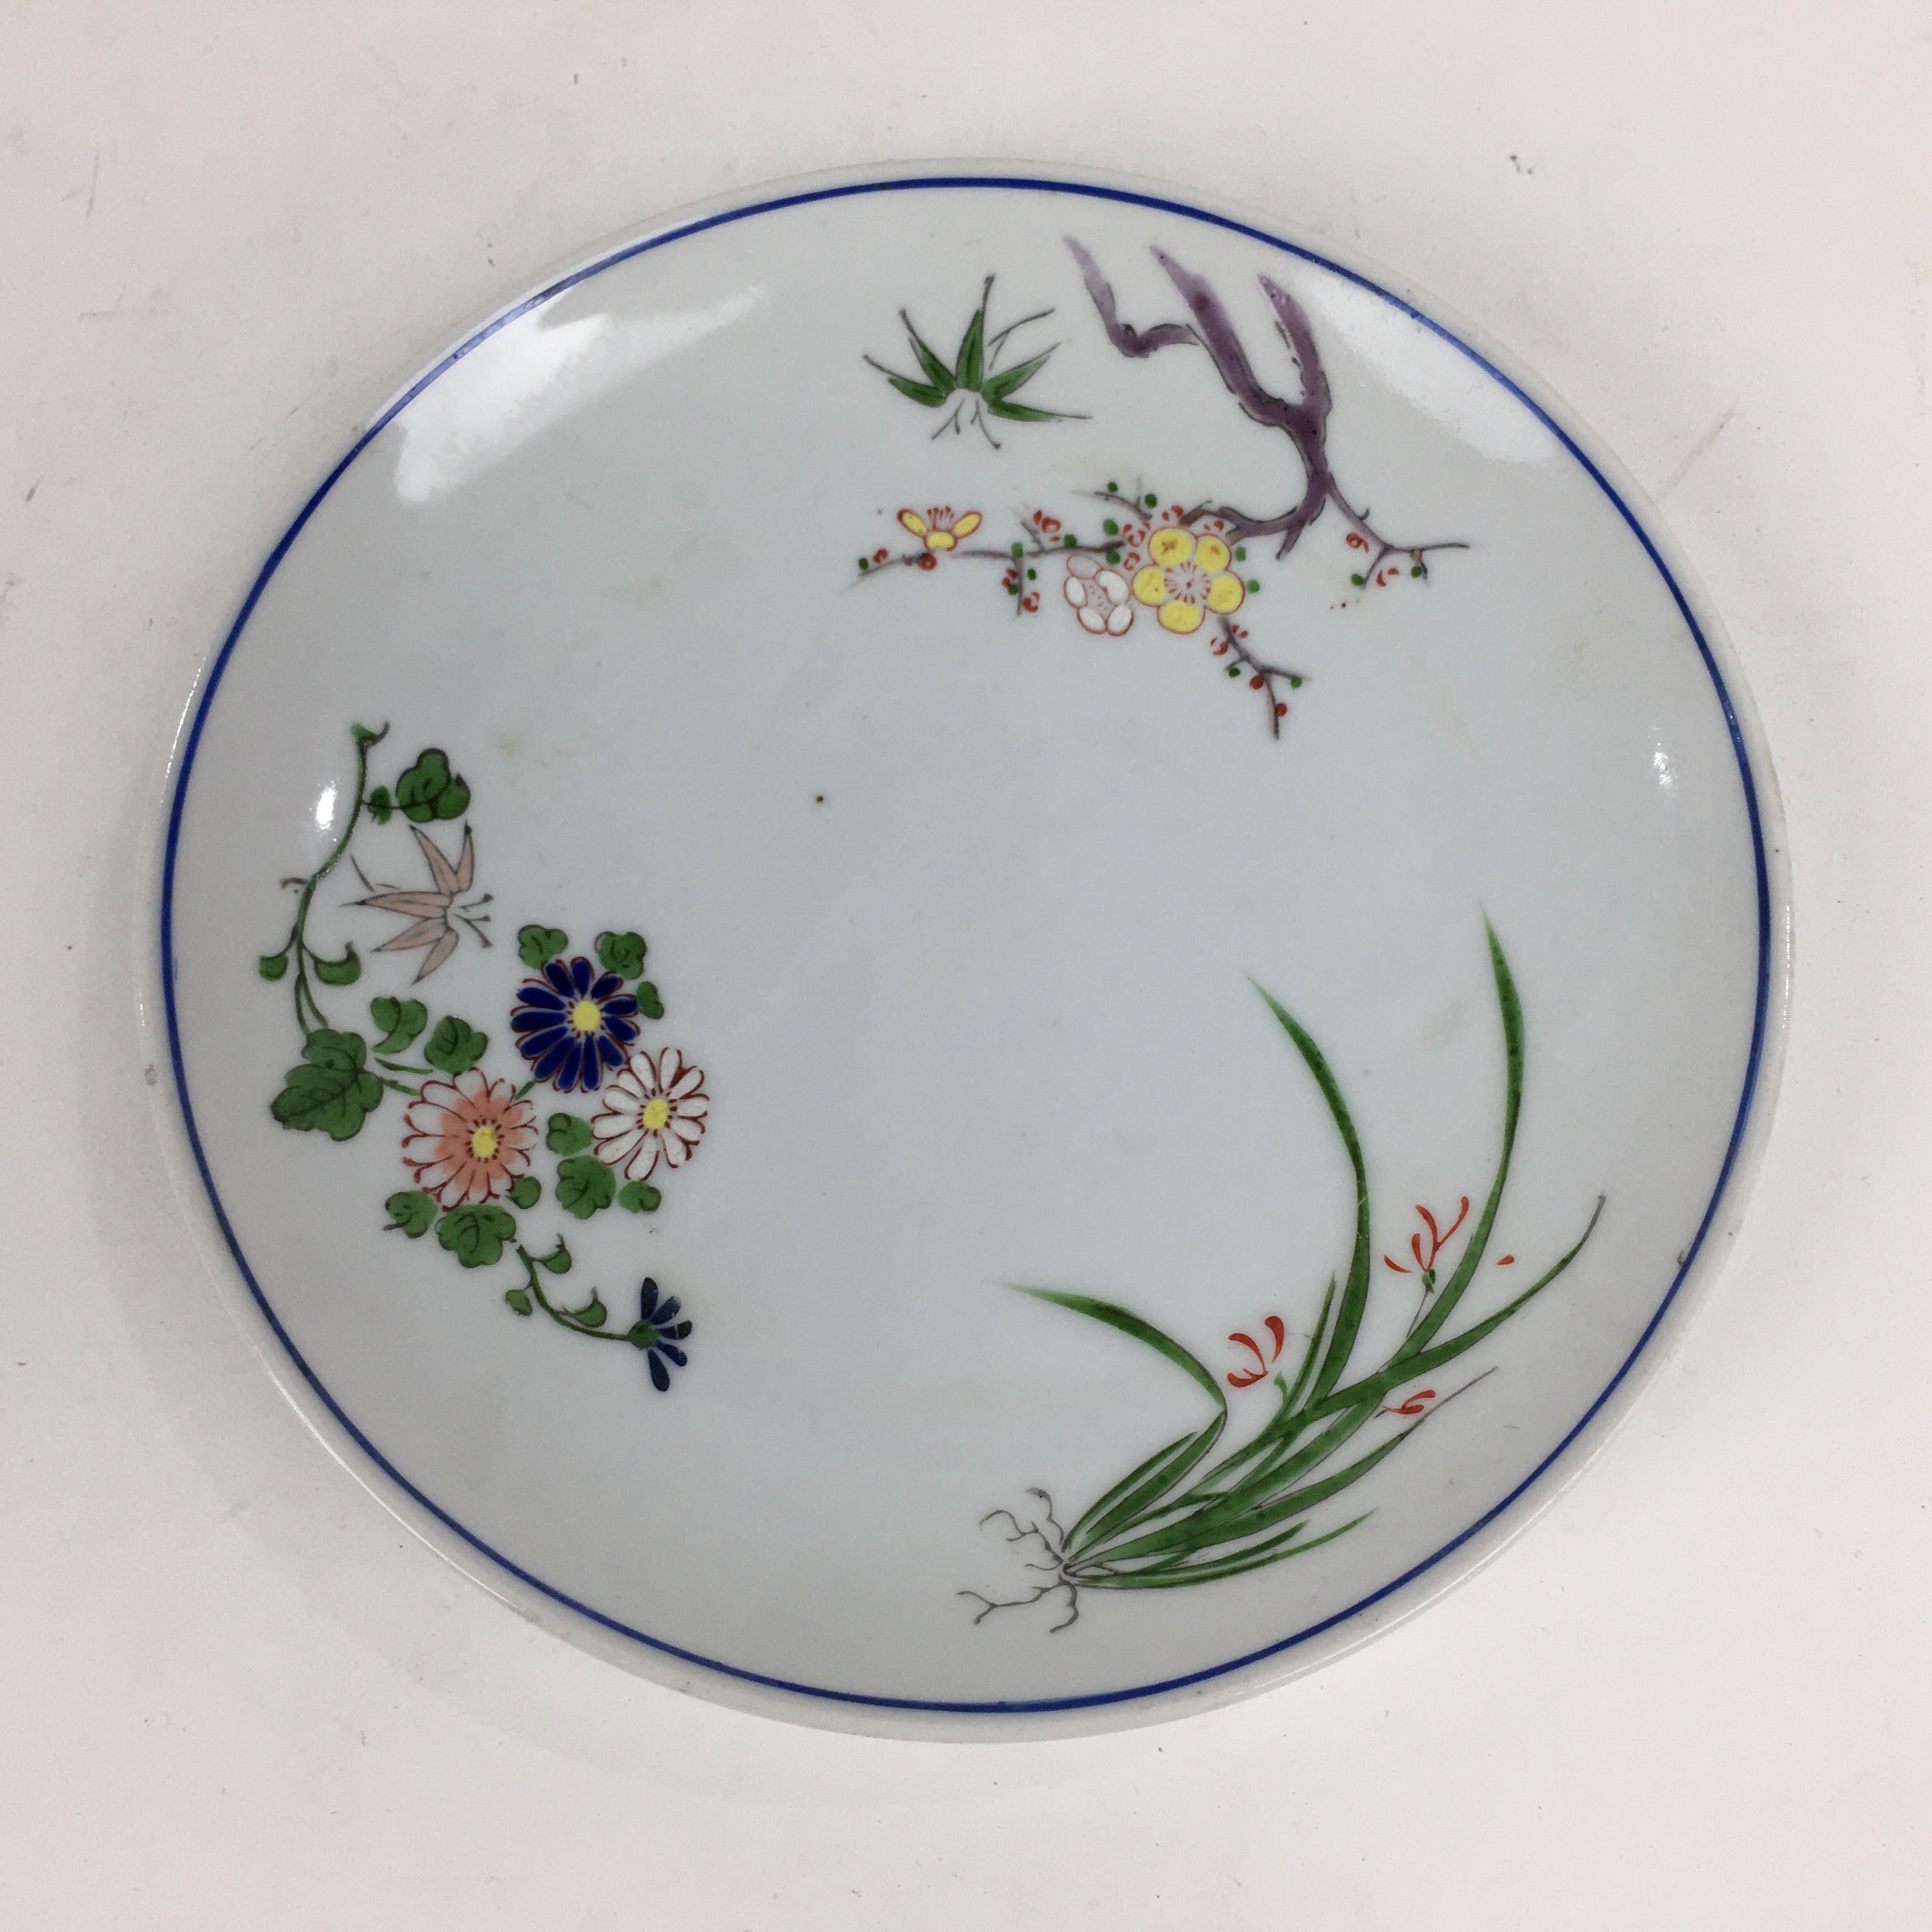 Japanese Porcelain Kutani Ware Plate Vtg White Flower Design Round Sara PP769